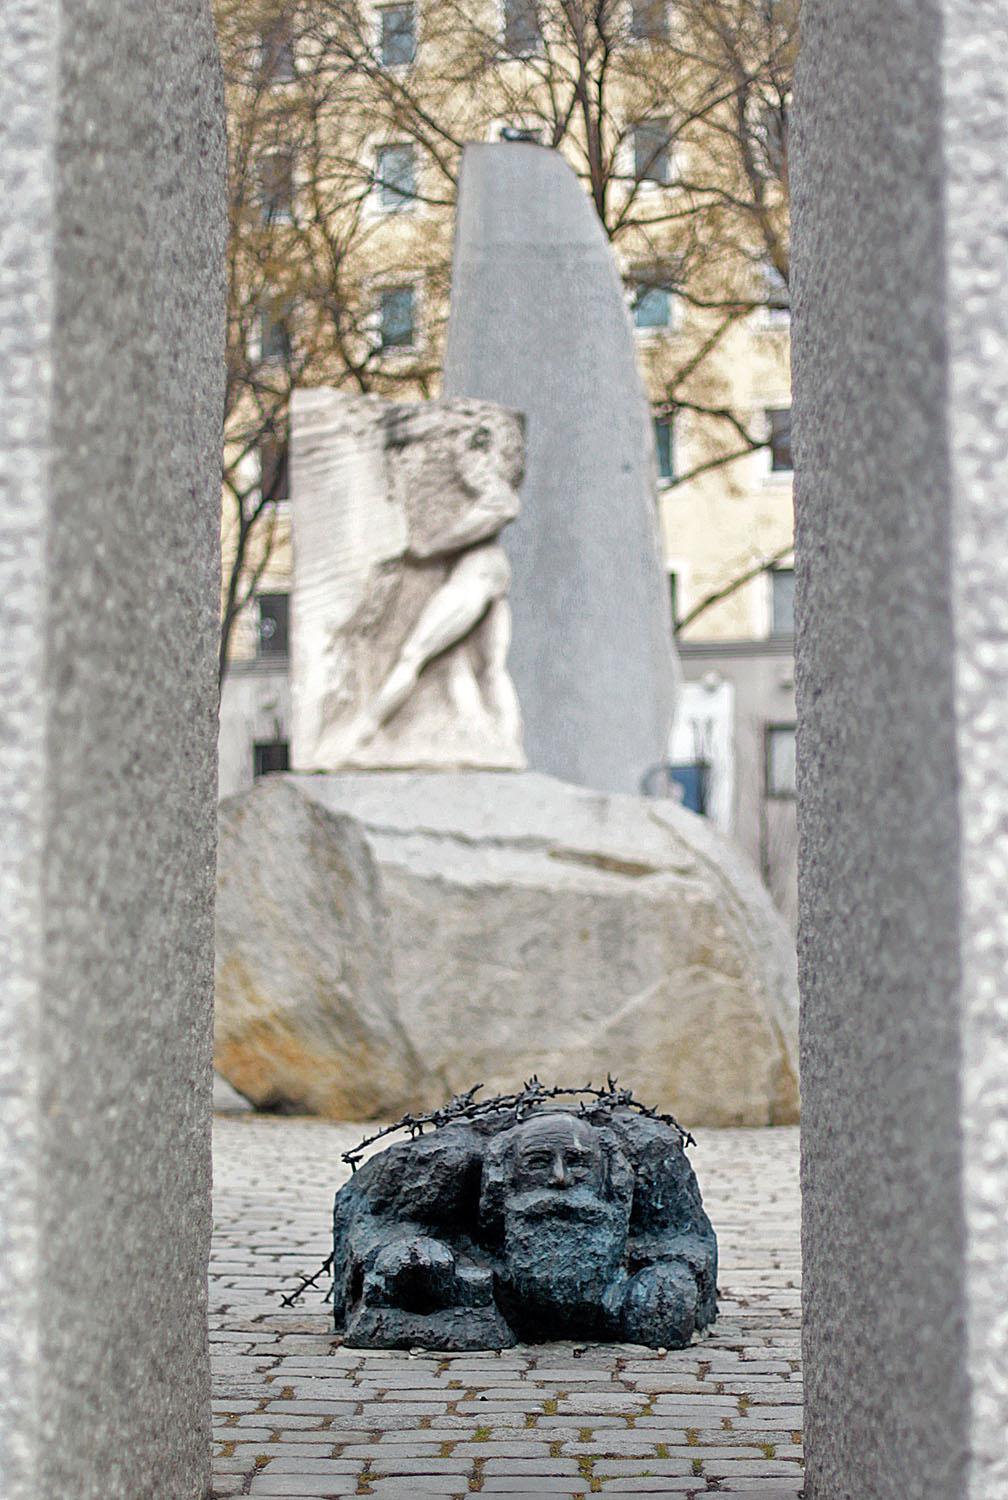 Alfred Hrdlicka bronztömbje. A porig alázott öreg zsidó, akire rá szoktak ülni a vidám városnézők